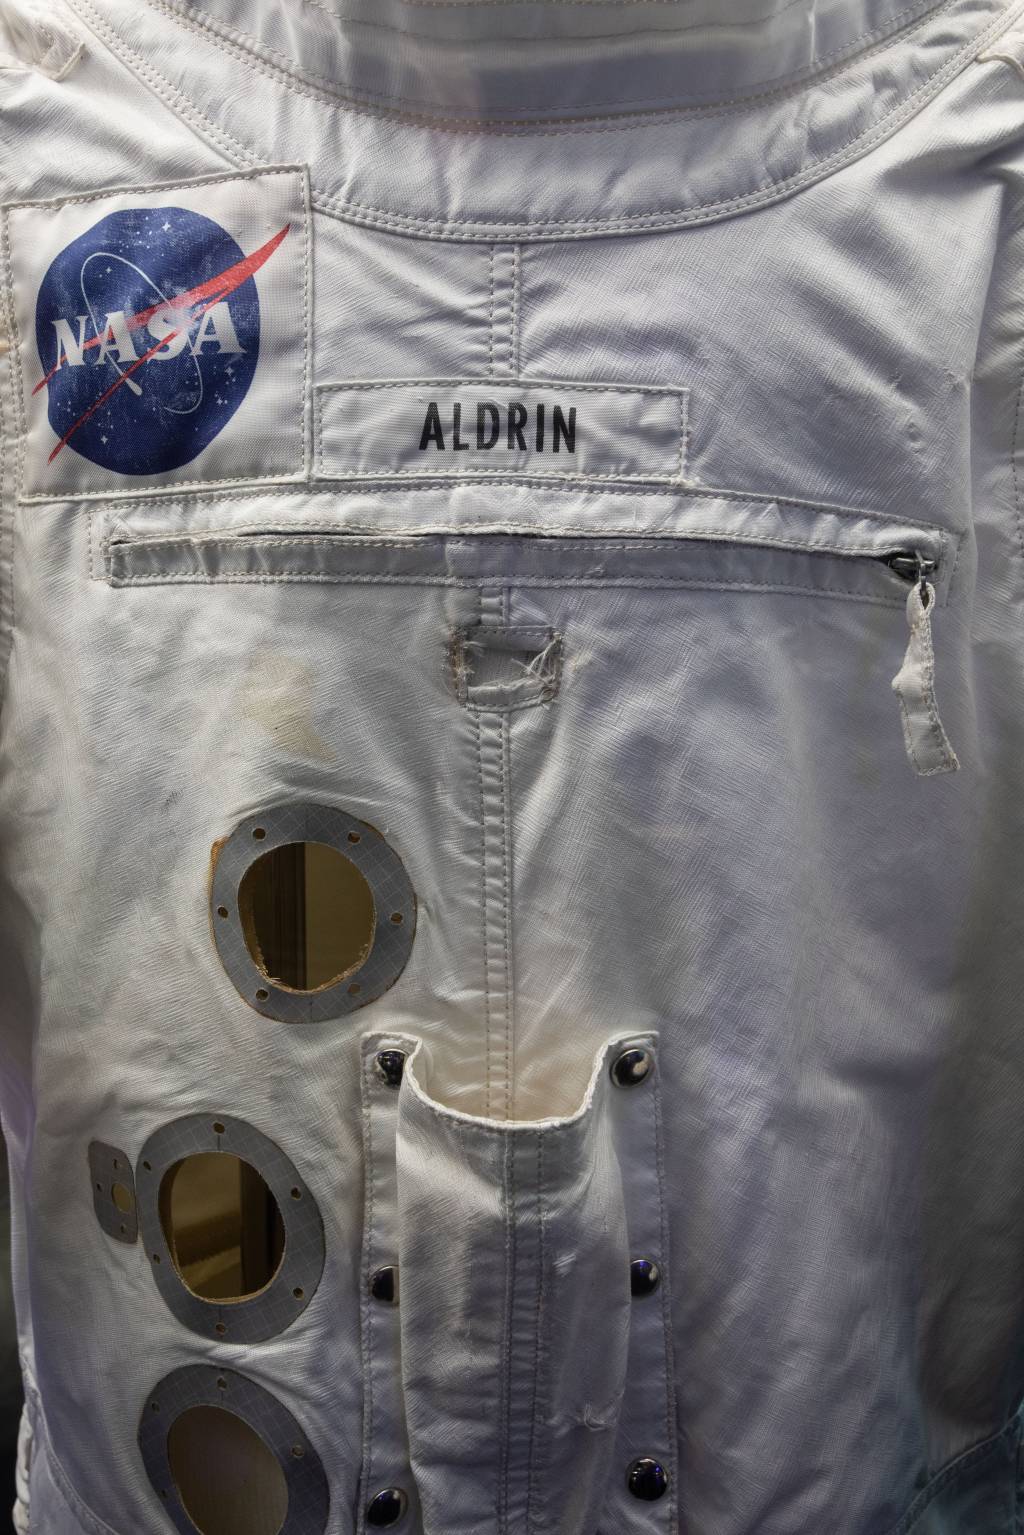 Detalhes de traje espacial mostram logotipo da Nasa e nome 